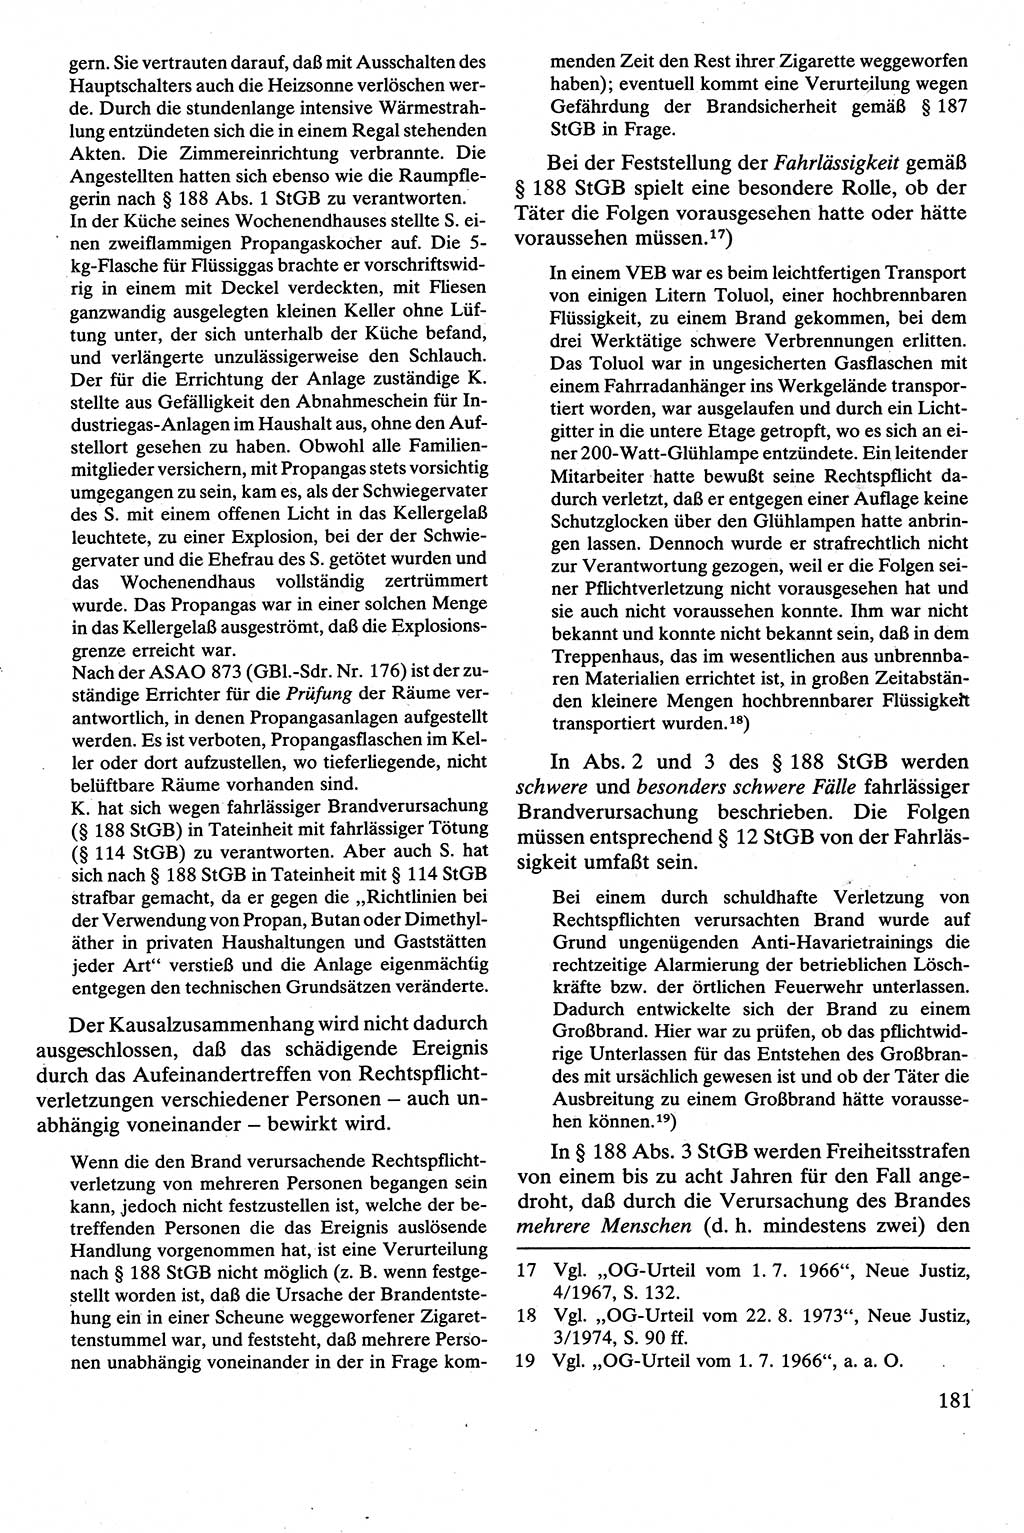 Strafrecht [Deutsche Demokratische Republik (DDR)], Besonderer Teil, Lehrbuch 1981, Seite 181 (Strafr. DDR BT Lb. 1981, S. 181)